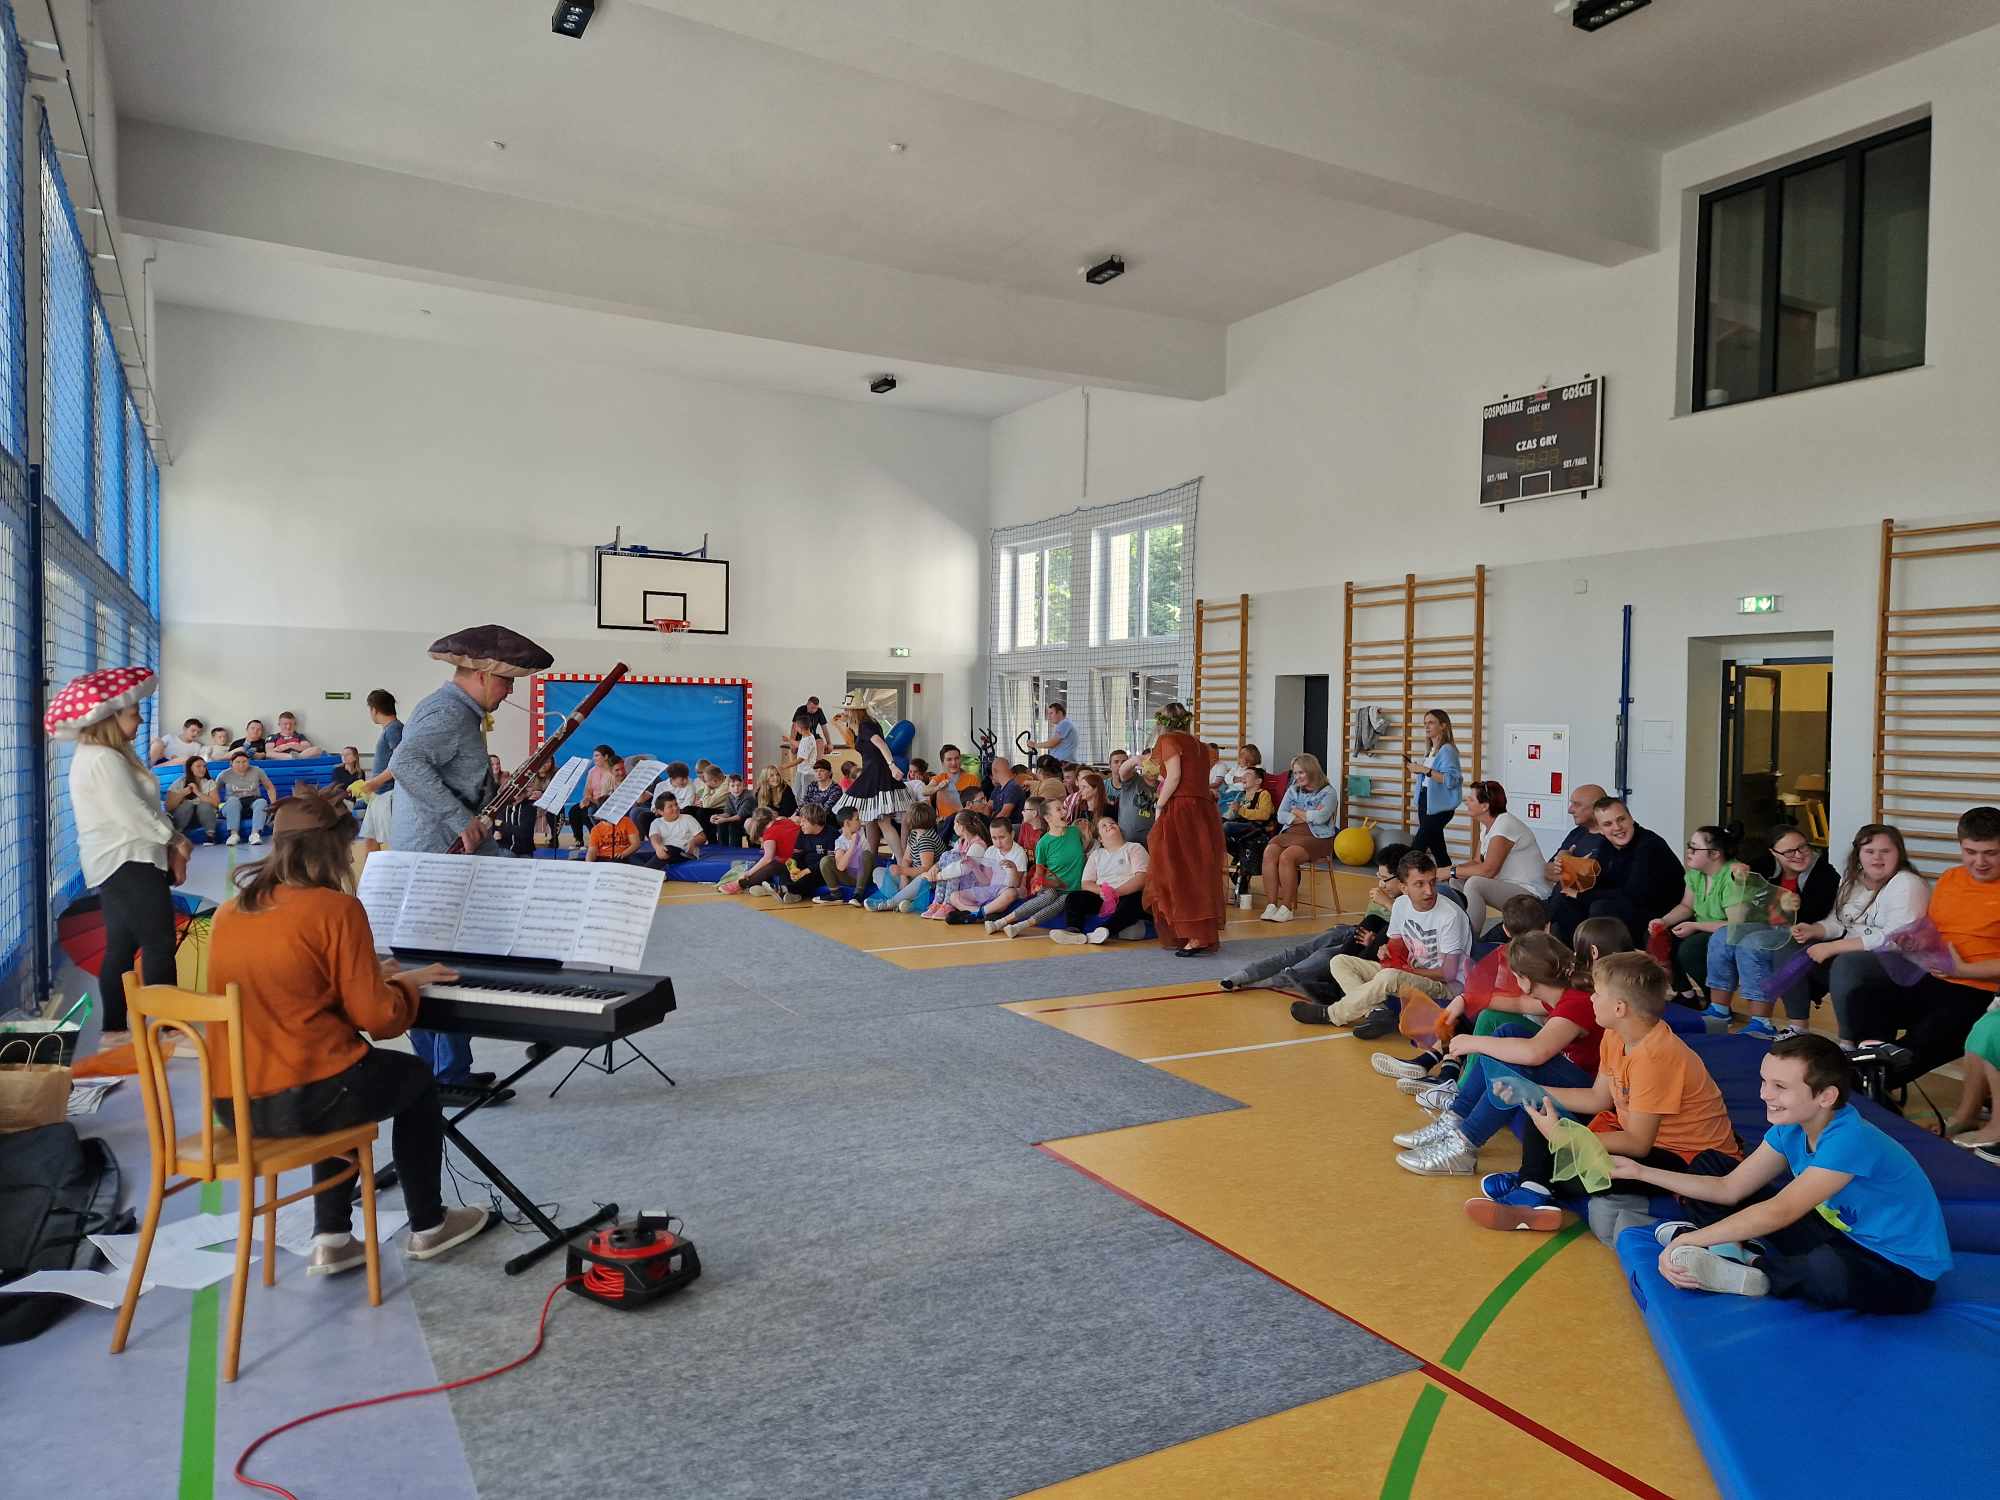 Na zdjęciu znajduje się duża grupa dzieci siedząca po turecku na sali gimnastycznej. Na przeciwko dzieci znajduje się pan, który gra na instrumencie zwany fagotem, a obok niego pani grająca na pianinie. 